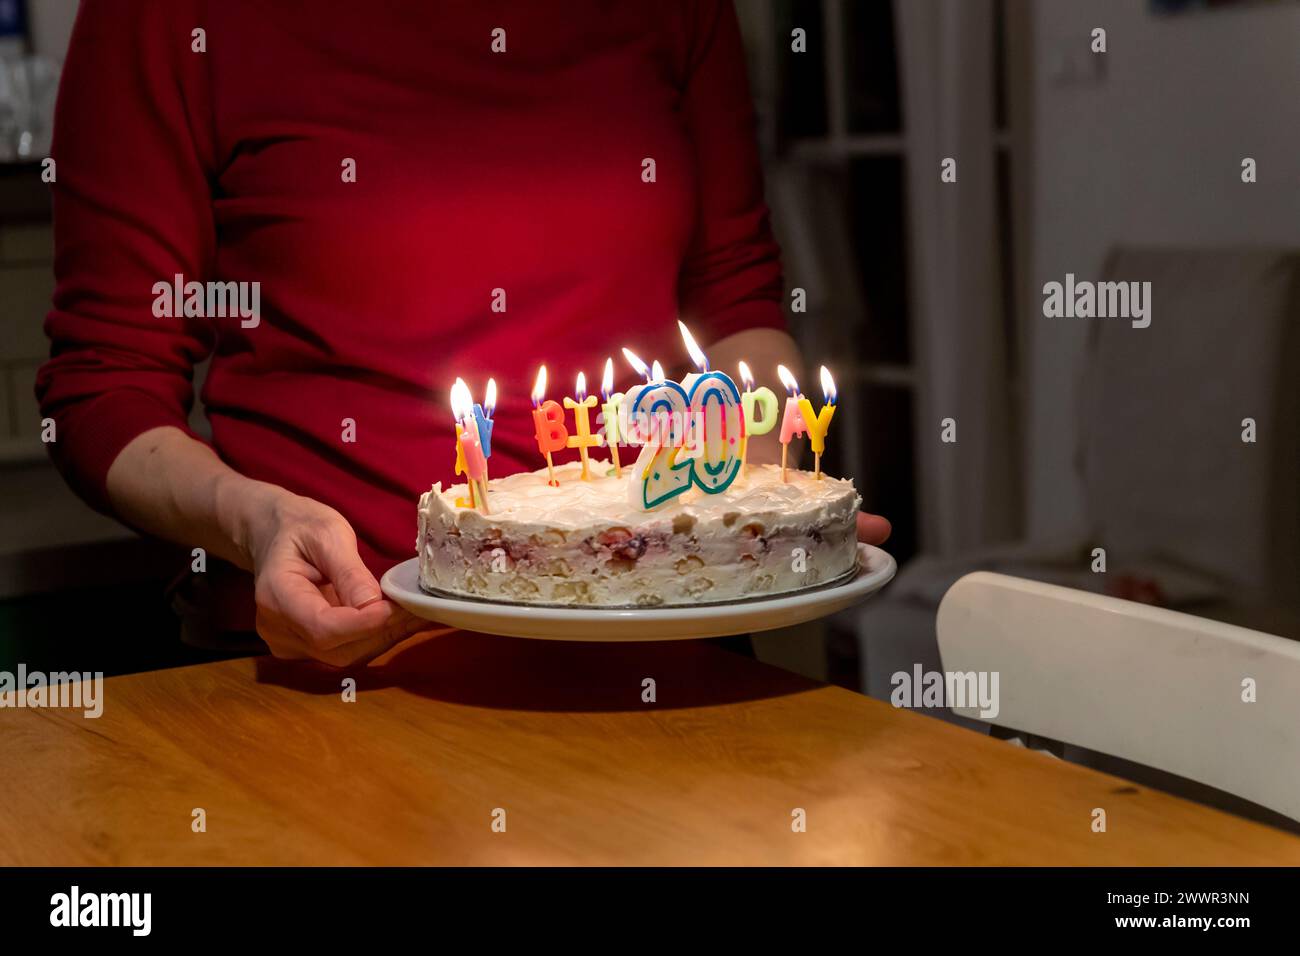 Hände mit Streichhölzern zünden vax Kerzen auf Geburtstagskuchen an Stockfoto